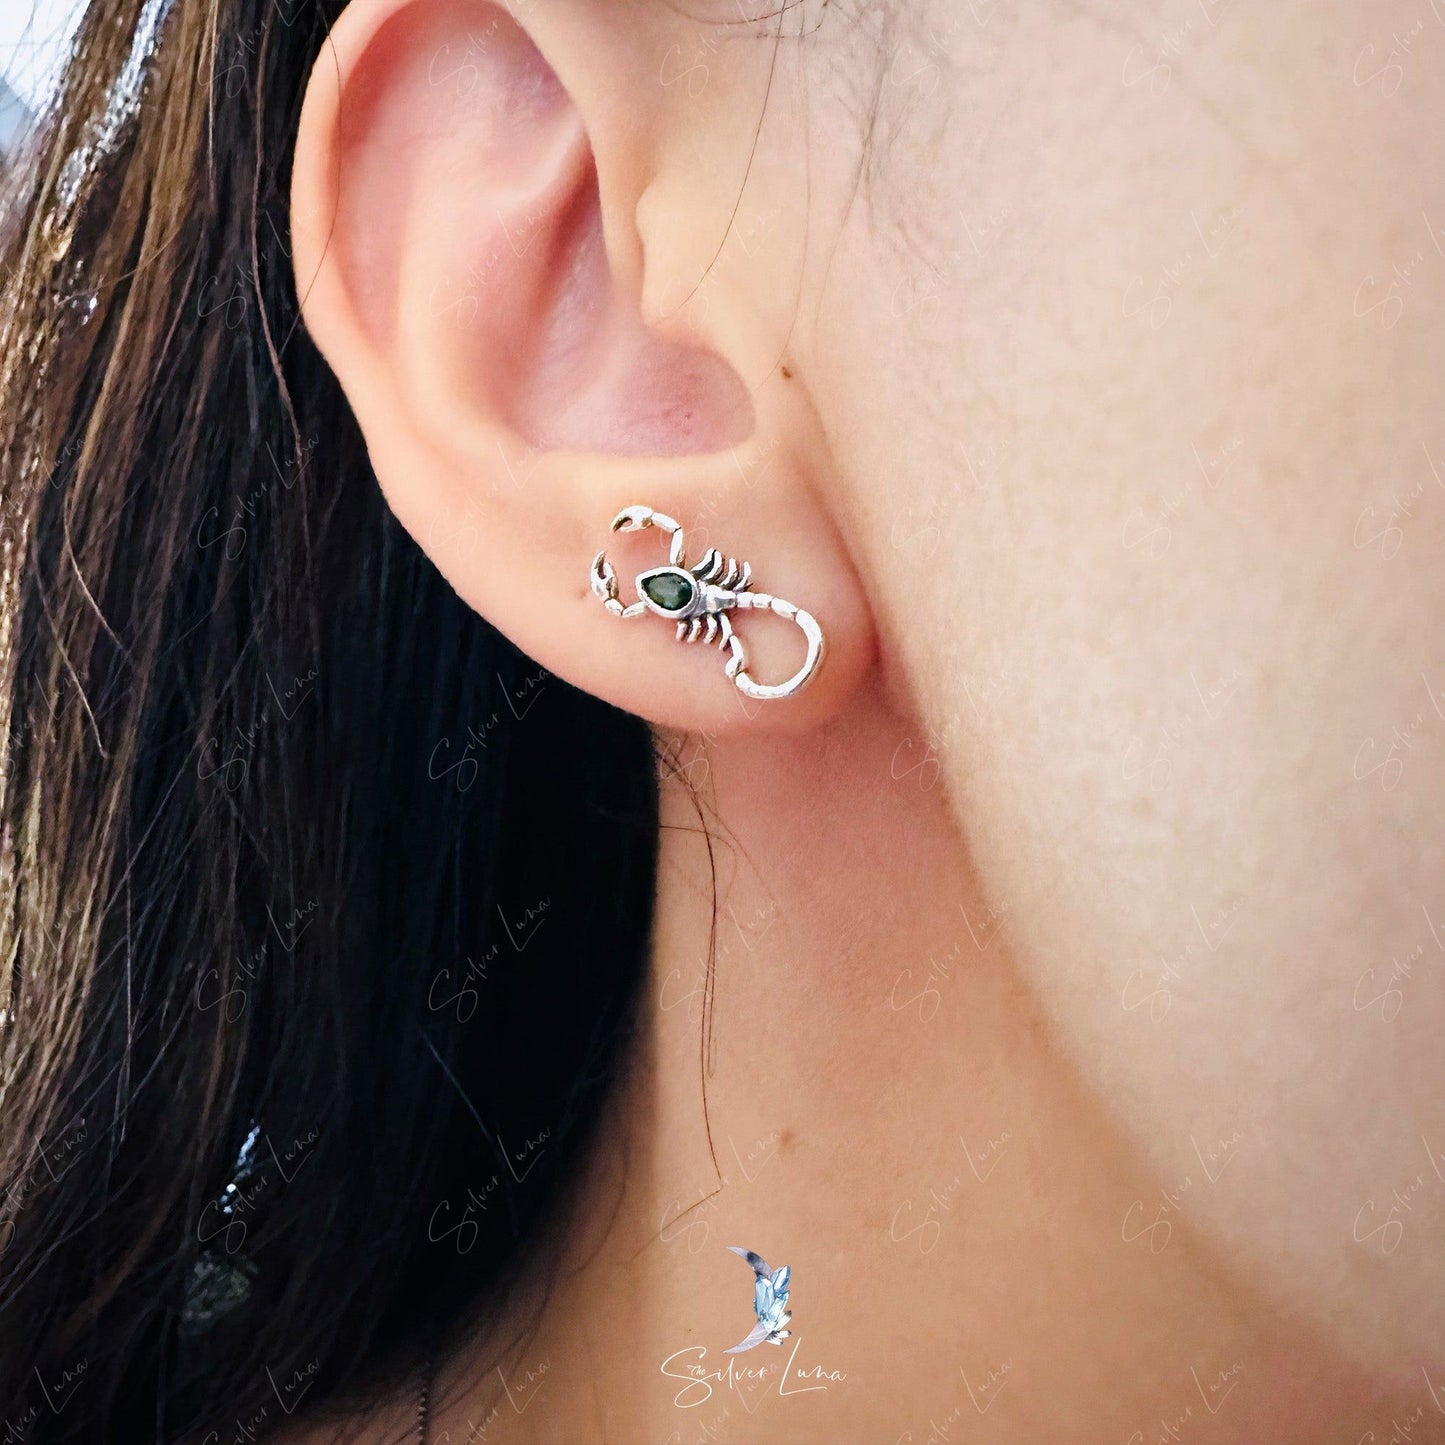 Scorpion stud earrings